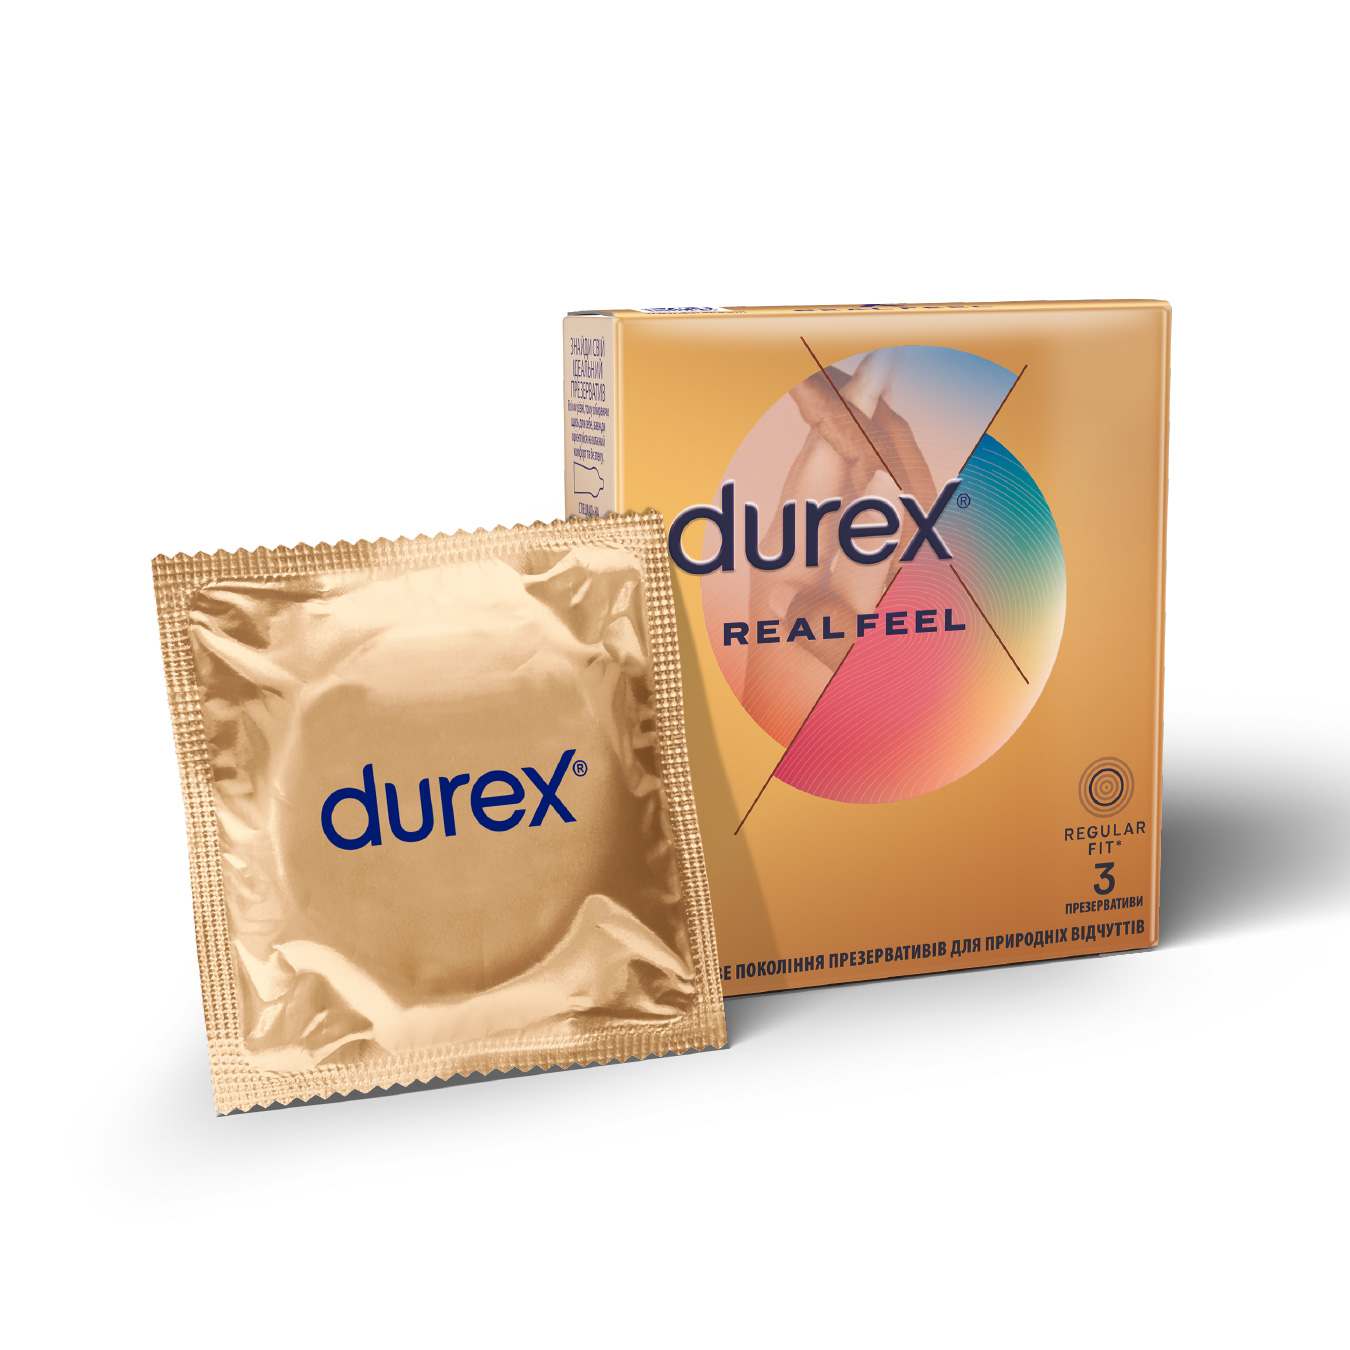 Durex Real Feel Condoms 3pcs